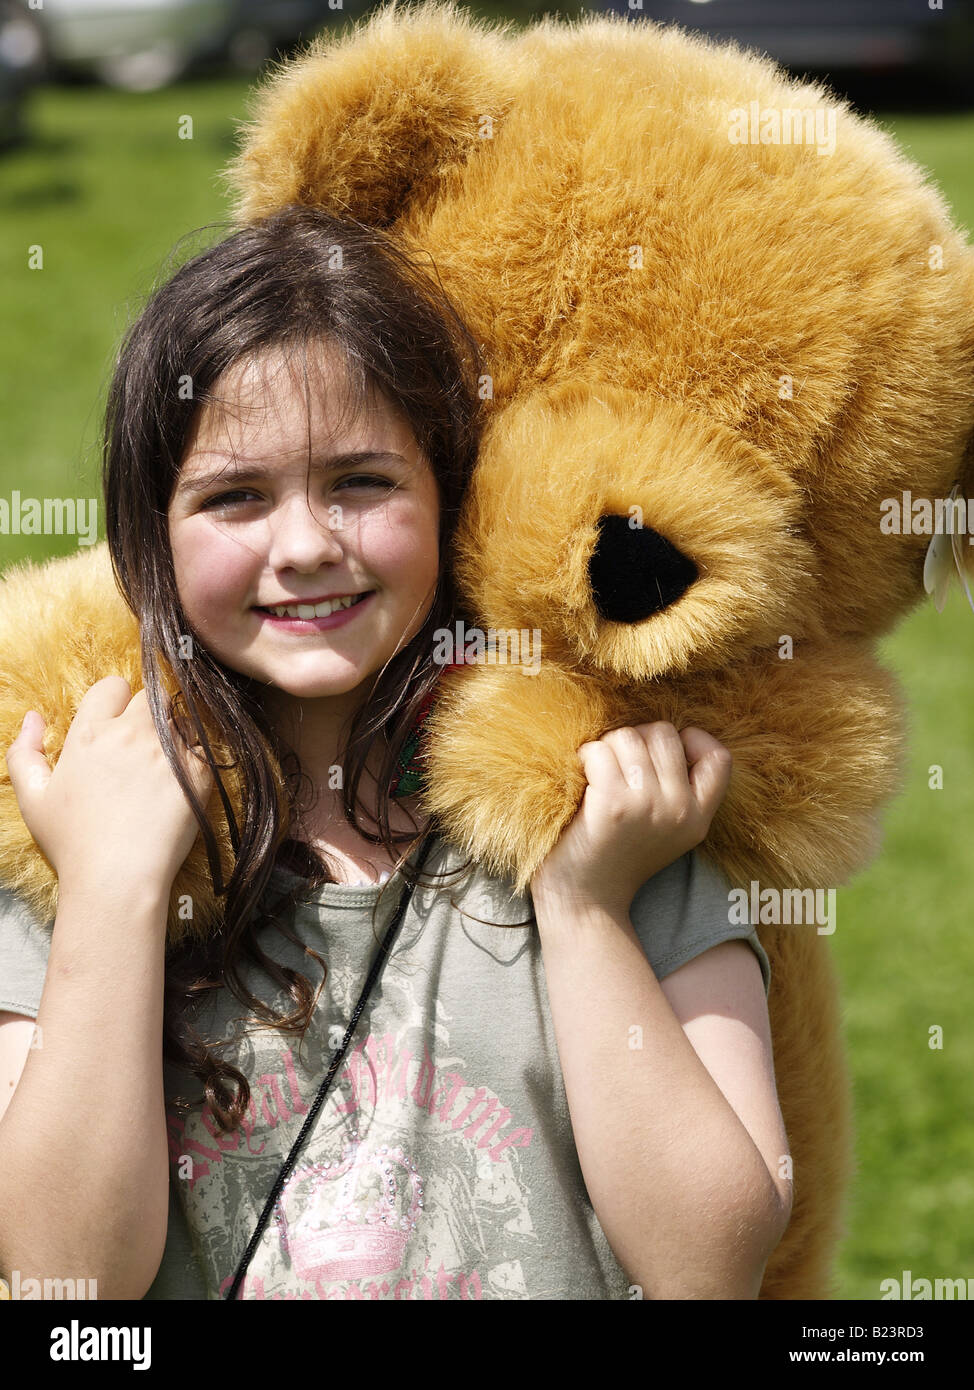 Brown joven pelirroja Chica sujetando un oso de peluche gigante que había traído en un coche venta de arranque Foto de stock